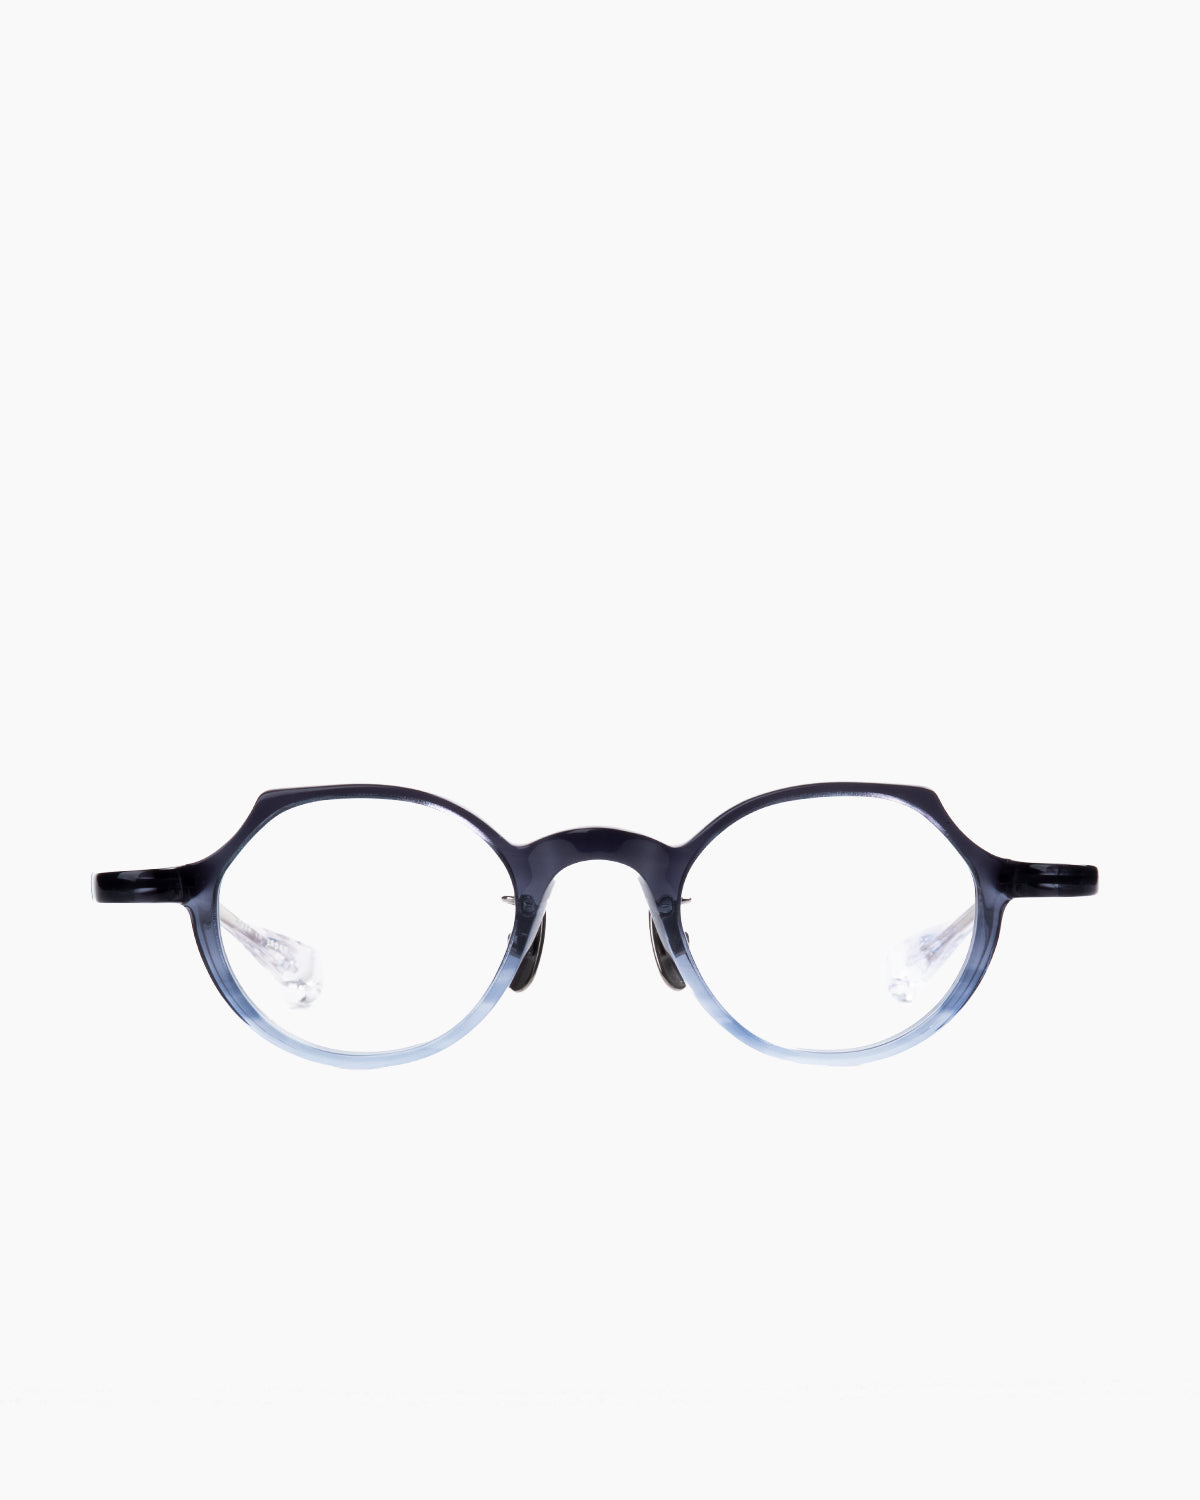 Factory 900 - Mimi - 726 | Bar à lunettes:  Marie-Sophie Dion